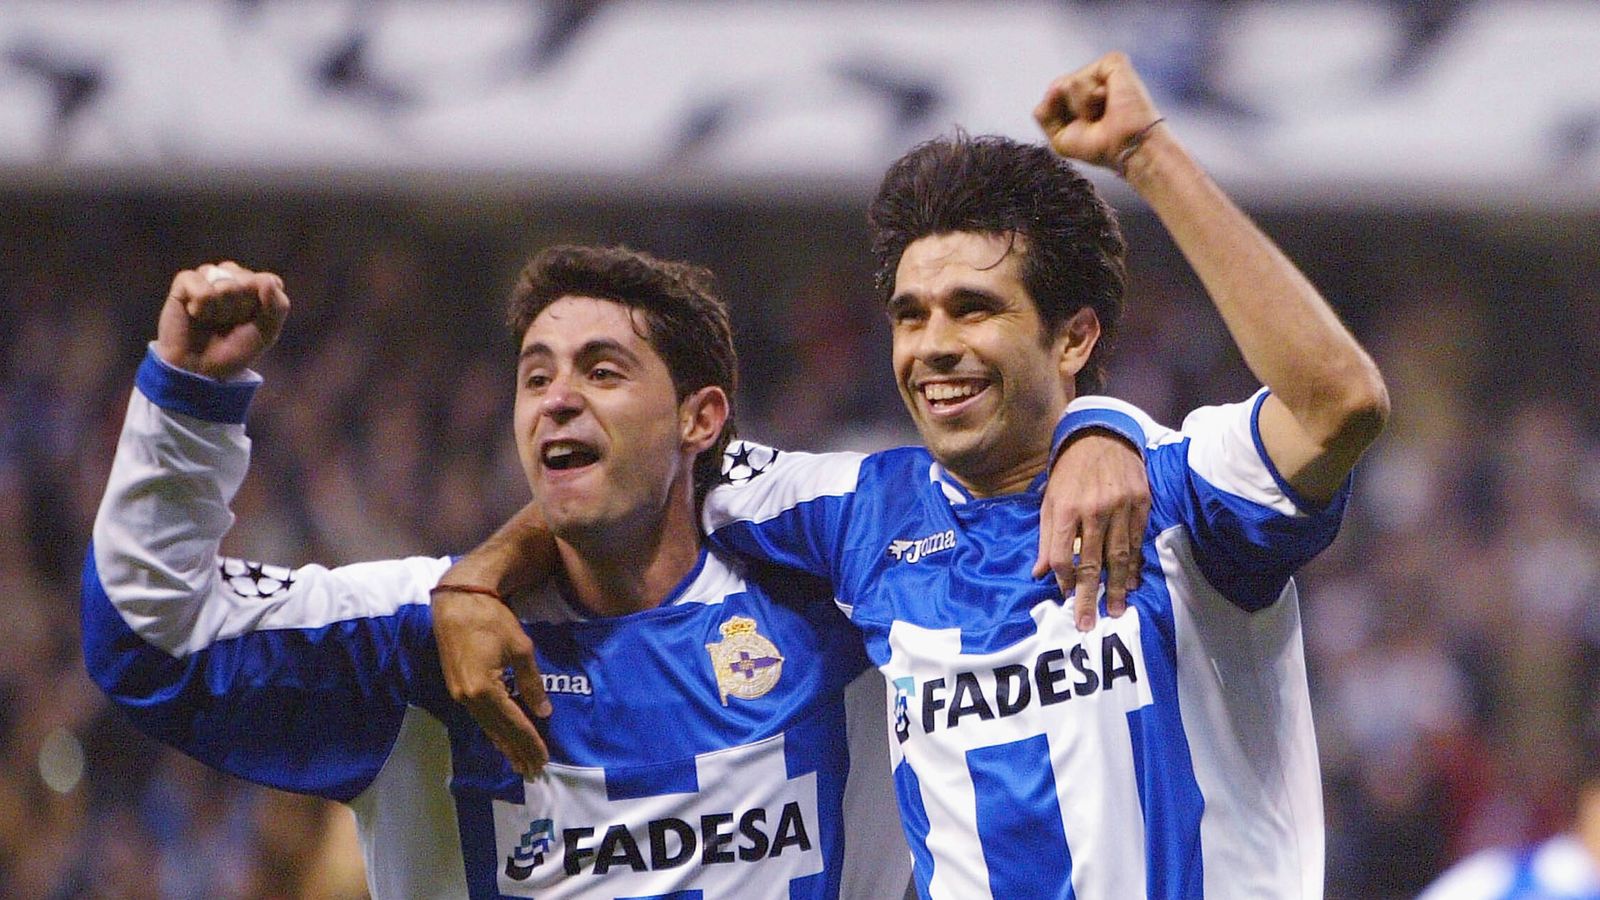 Valerón y Víctor celebran un gol. (Getty/Jaime McDonald)